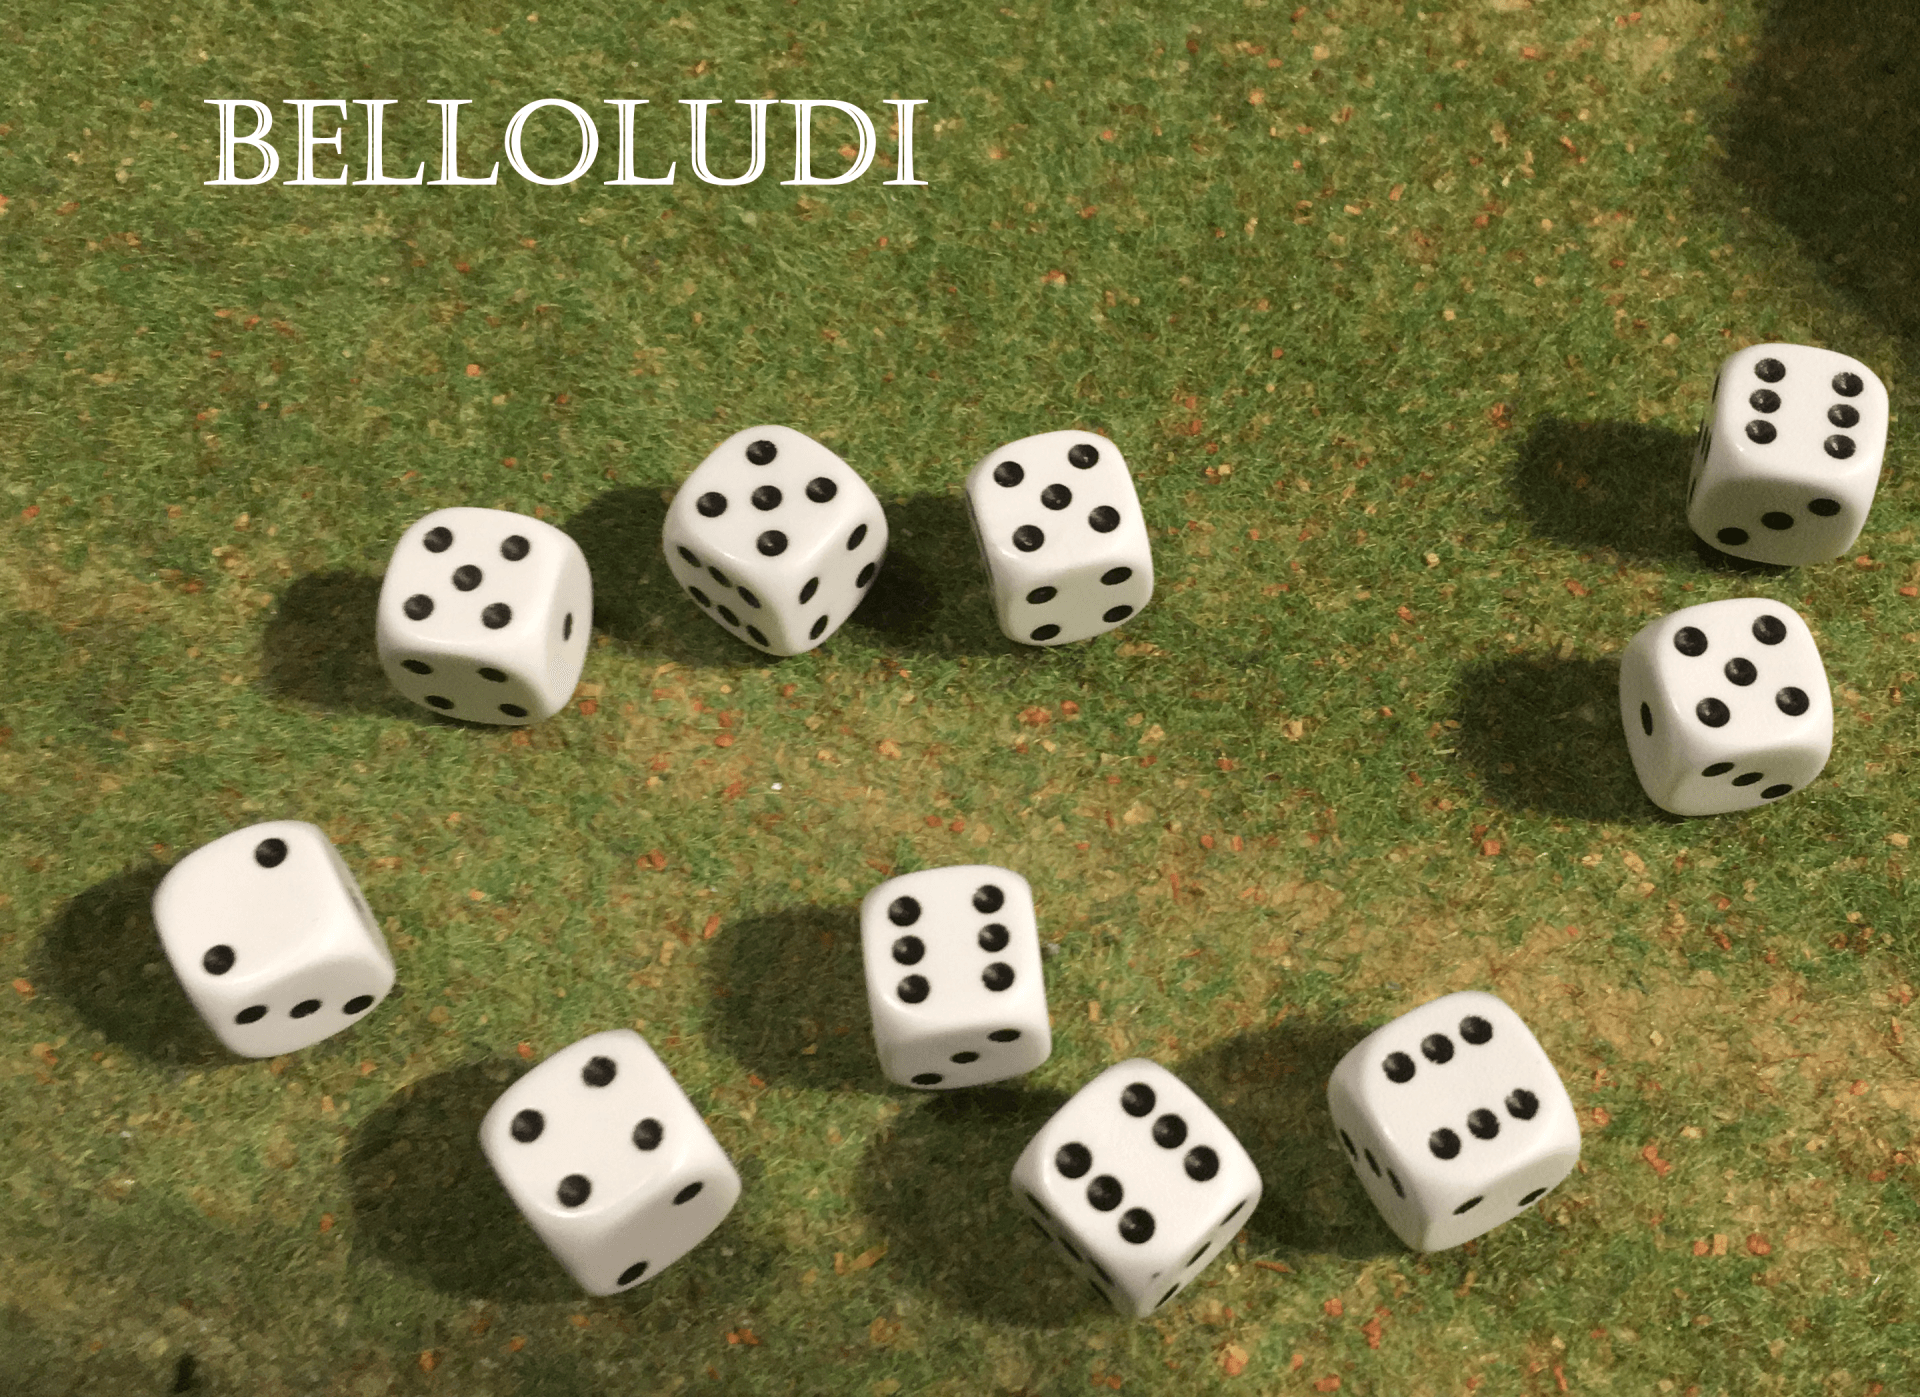 BelloLudi Spellbound - BelloLudi